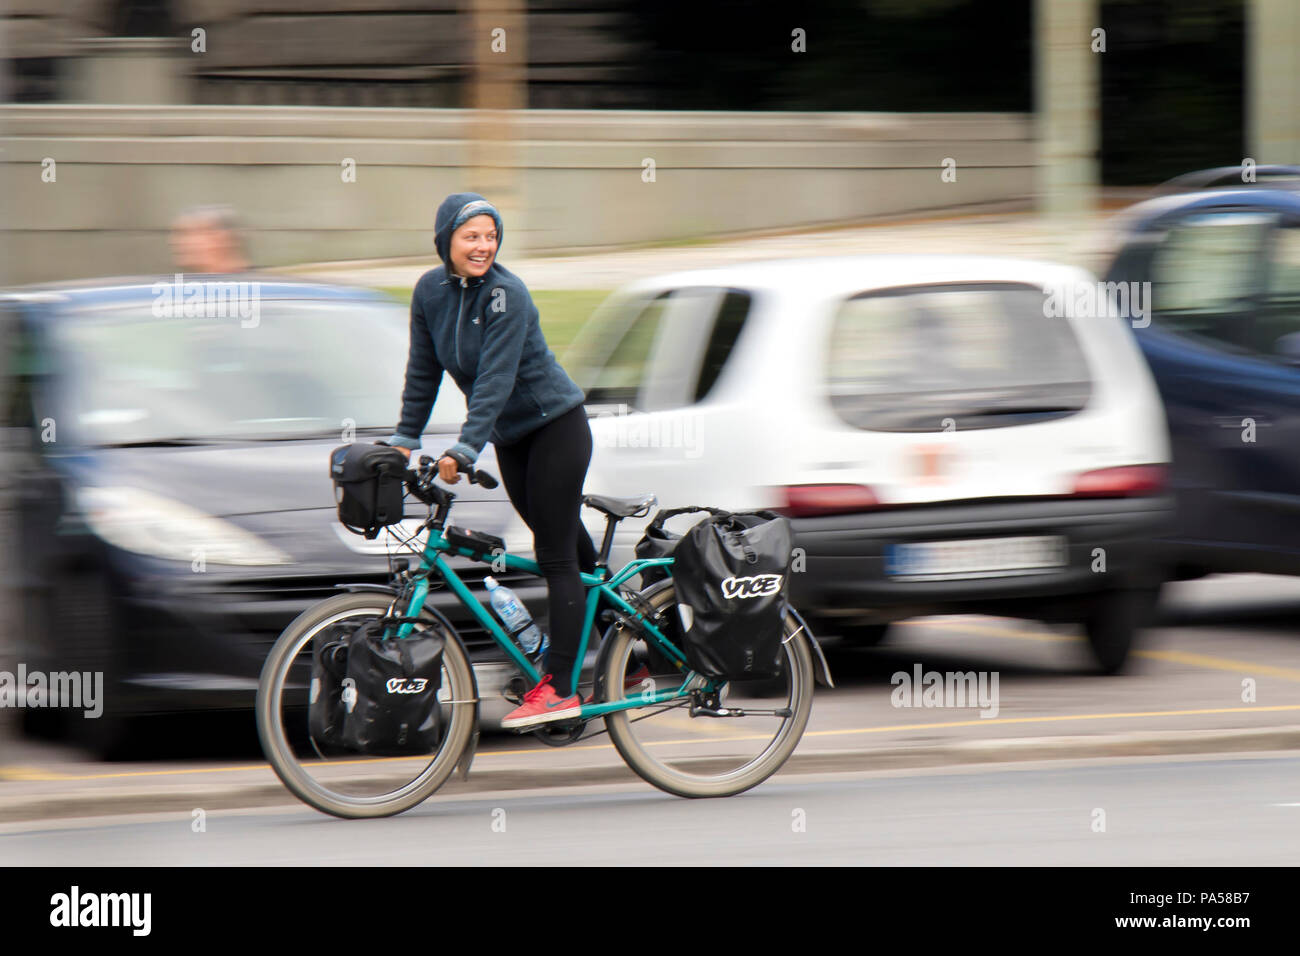 Belgrad, Serbien - Juni 24, 2018: Junge Frau, Vice Reporter, Fahrrad Fahren im Stehen und blickt lächelnd zu empfehlen, auf die Stadt. Stockfoto